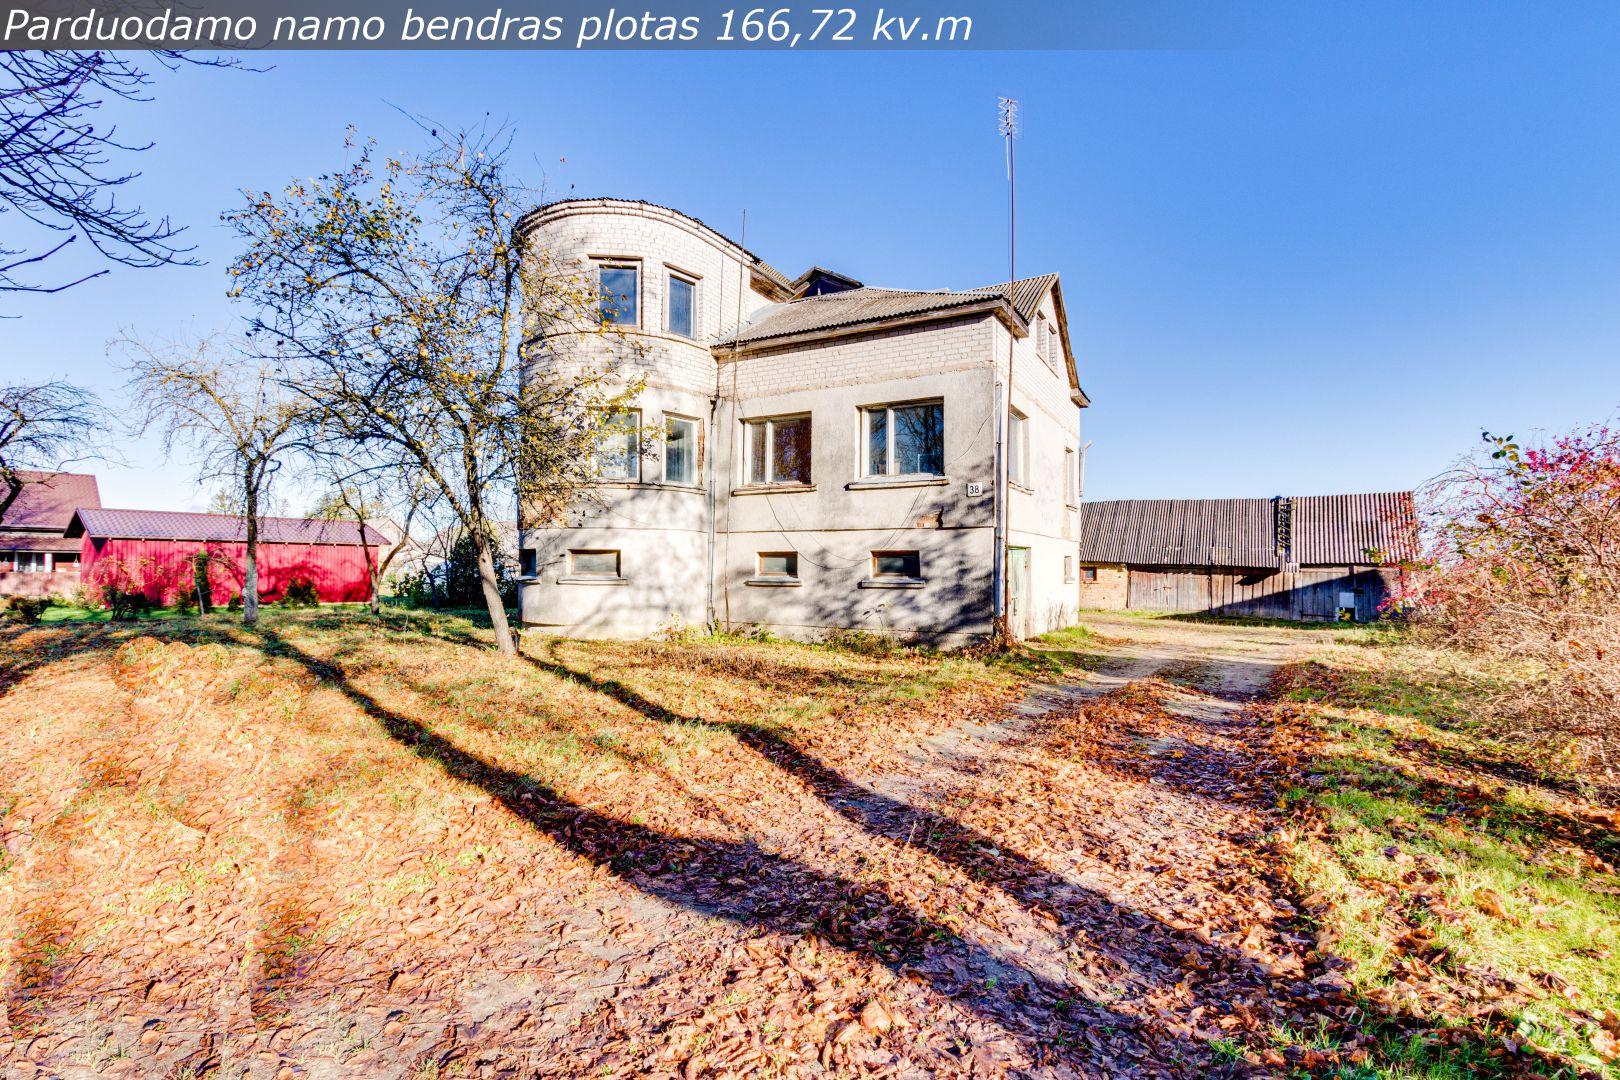 Parduodamas mūrinis namas su 44,56 arų žemės sklypu Sidabravo mstl., Radviliškio r.